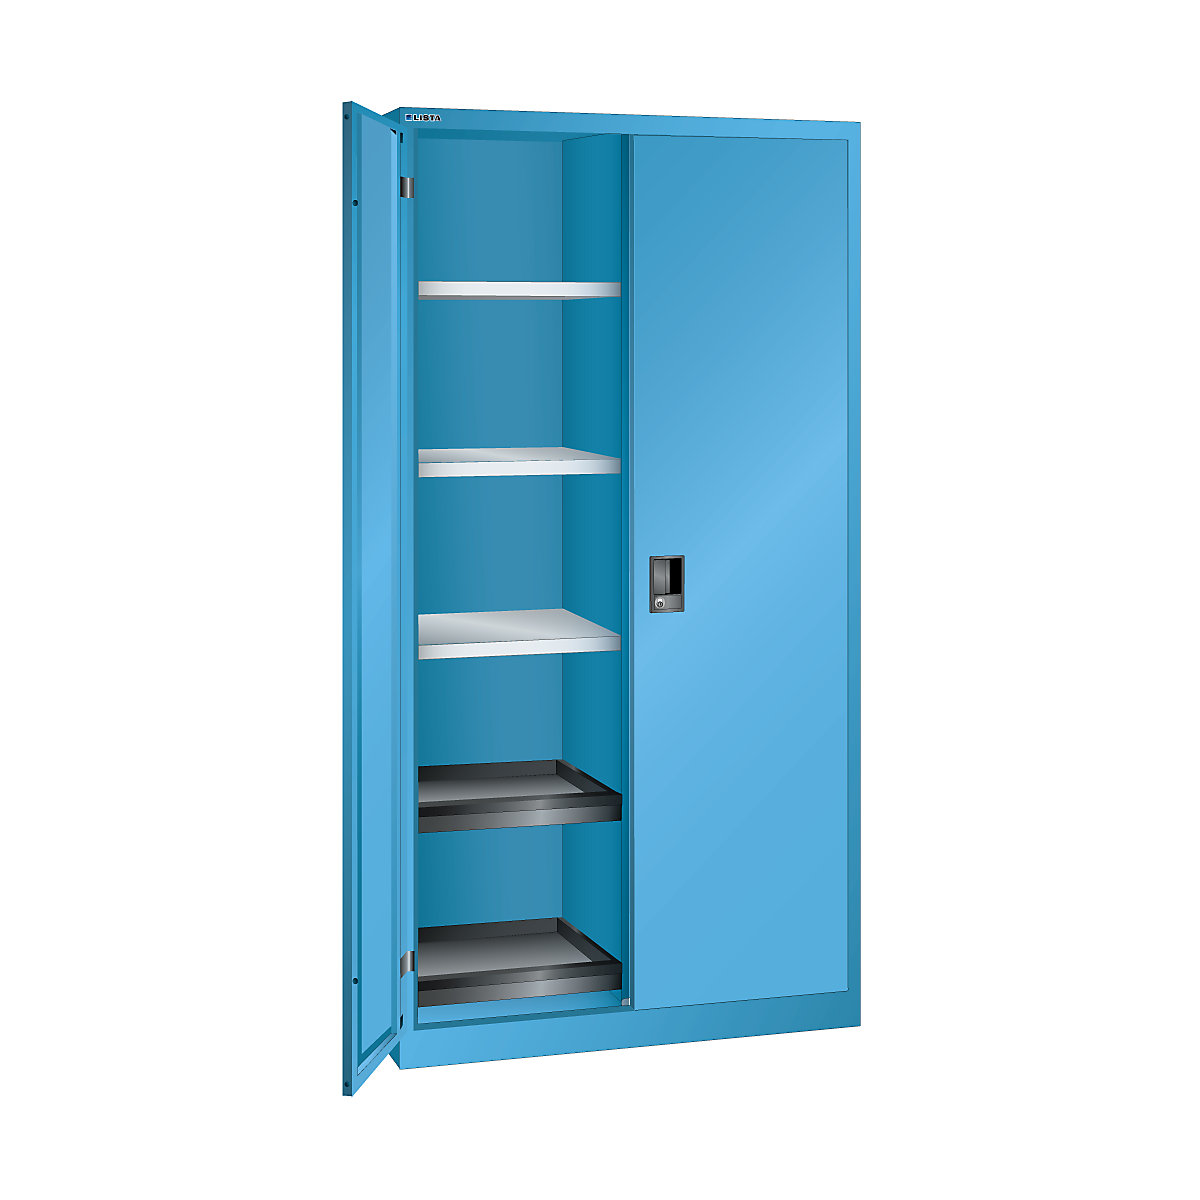 Armoire à portes battantes h x l x p 1950 x 1000 x 580 mm – LISTA, armoire vide avec 10 tablettes, bleu clair-9